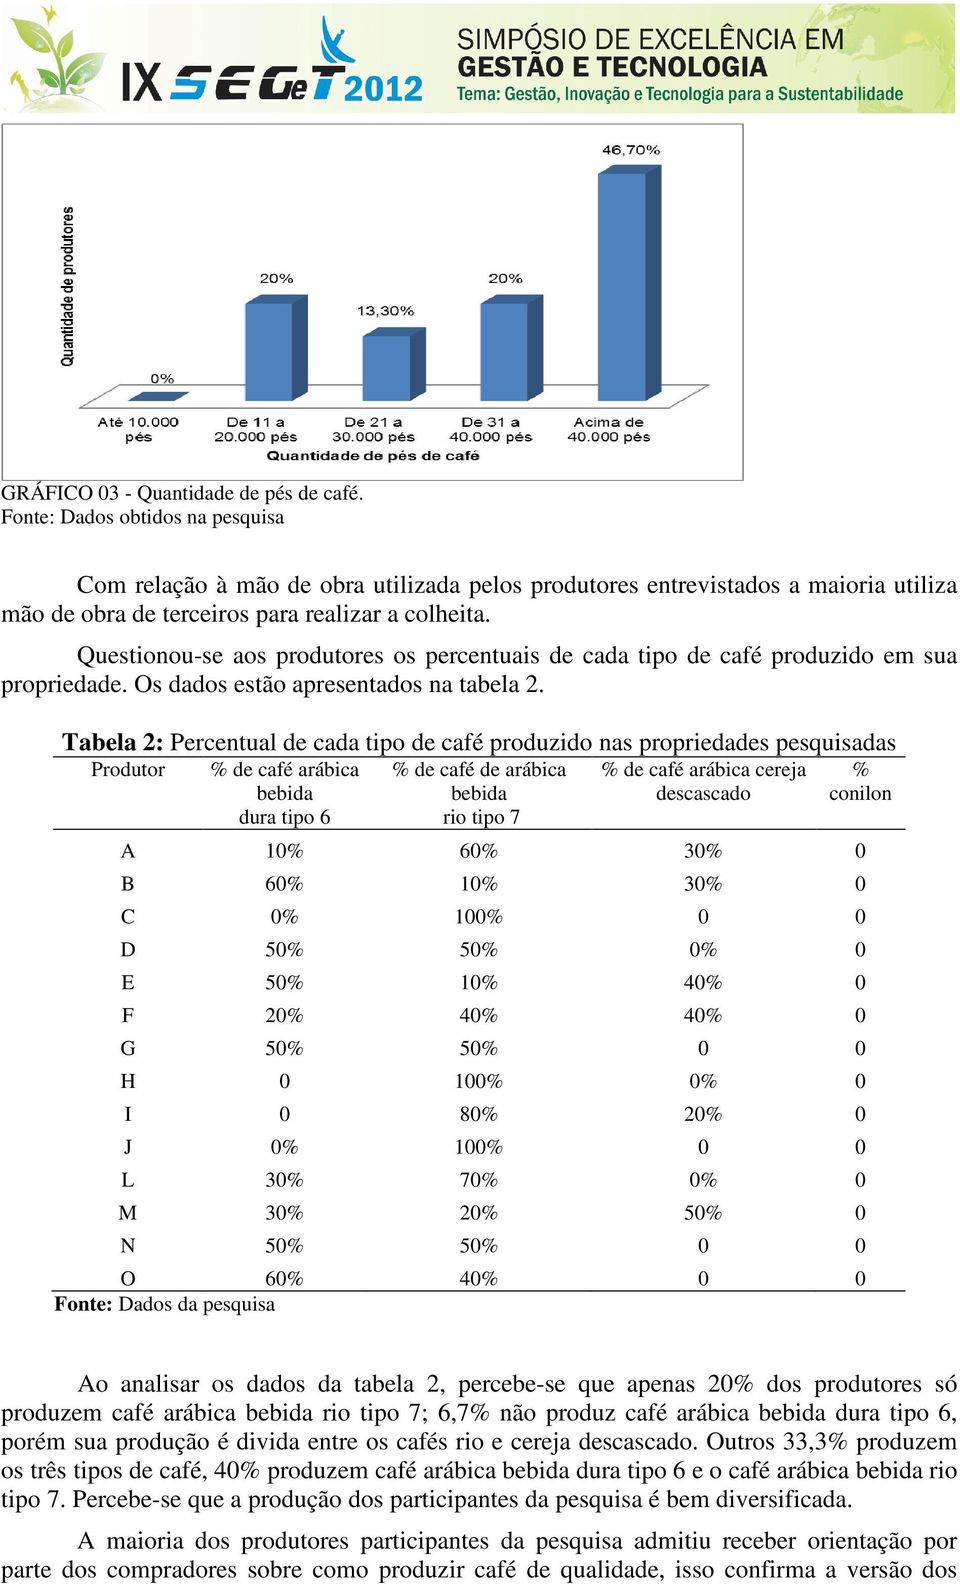 Questionou-se aos produtores os percentuais de cada tipo de café produzido em sua propriedade. Os dados estão apresentados na tabela 2.